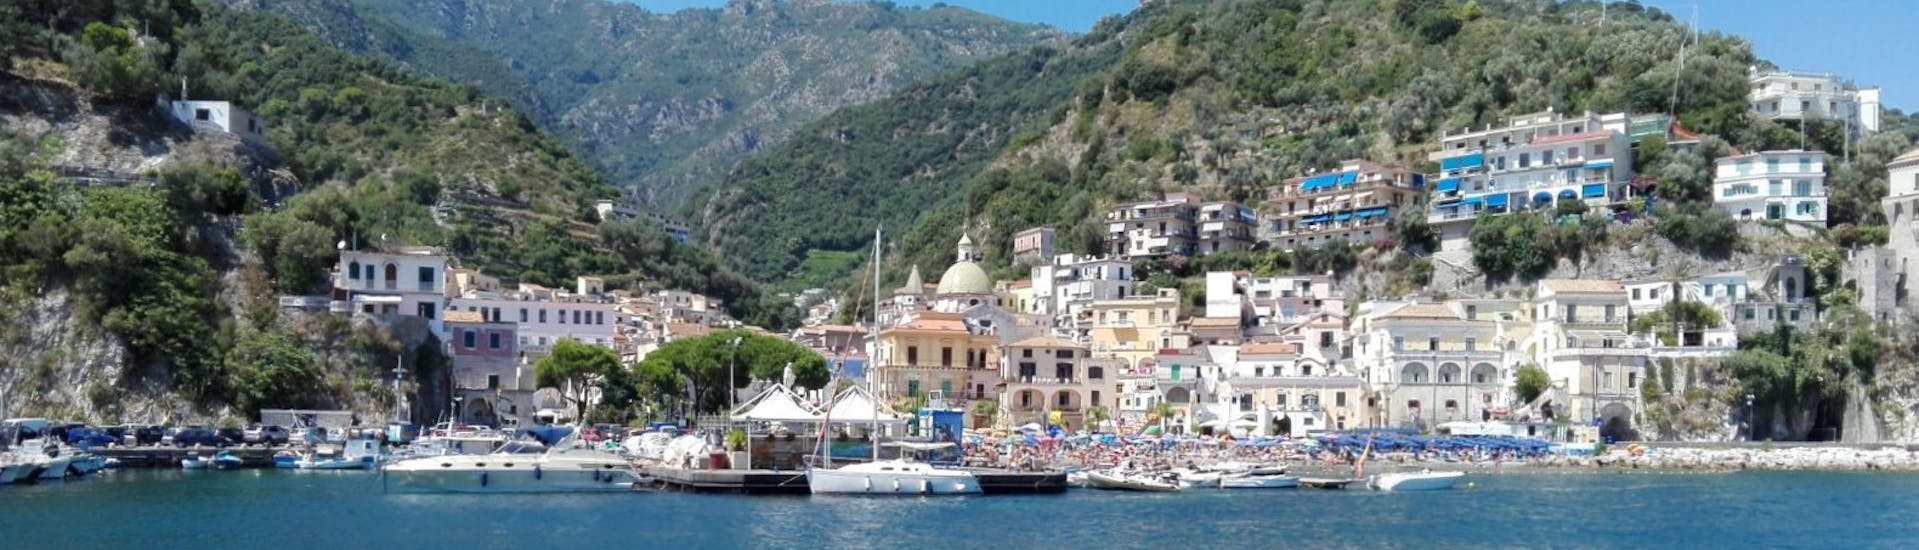 De kust van Sorrento gezien vanaf de boot tijdens de Privé Boottocht van Sorrento naar Capri & Positano met Apéritief en Snorkelen met The Morgans.